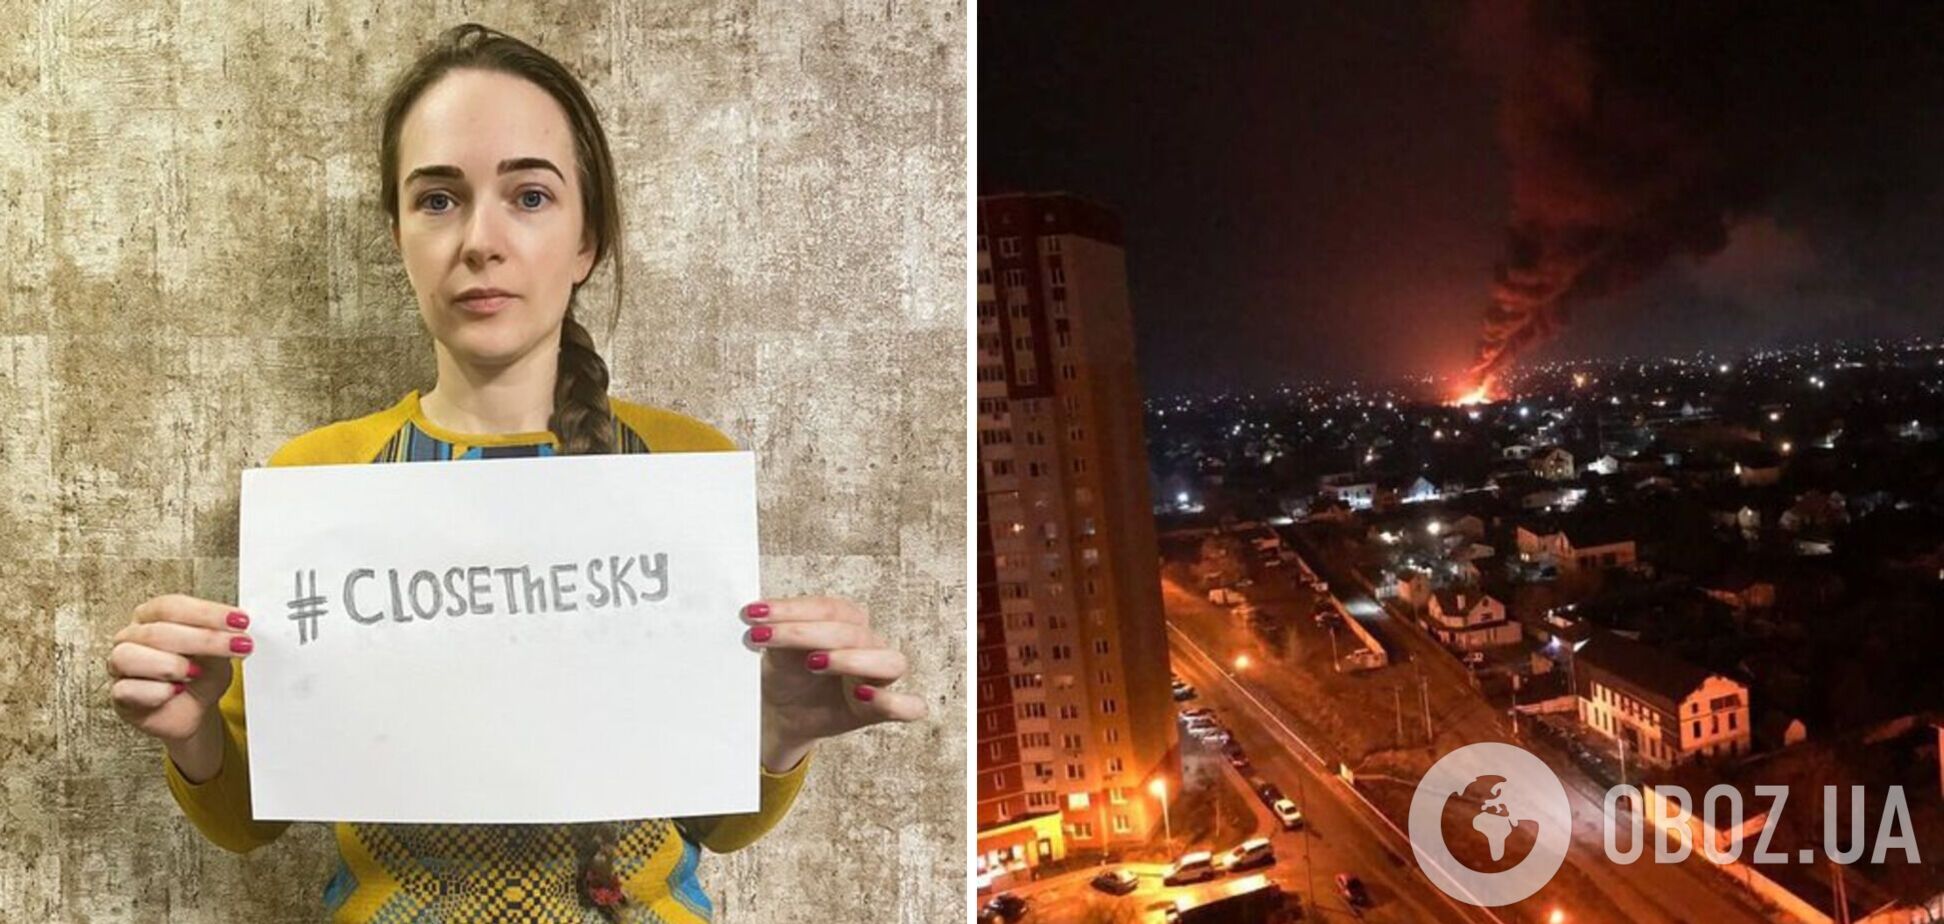 Закройте небо, остановите Россию: украинцы в соцсетях запустили флешмоб. Фото